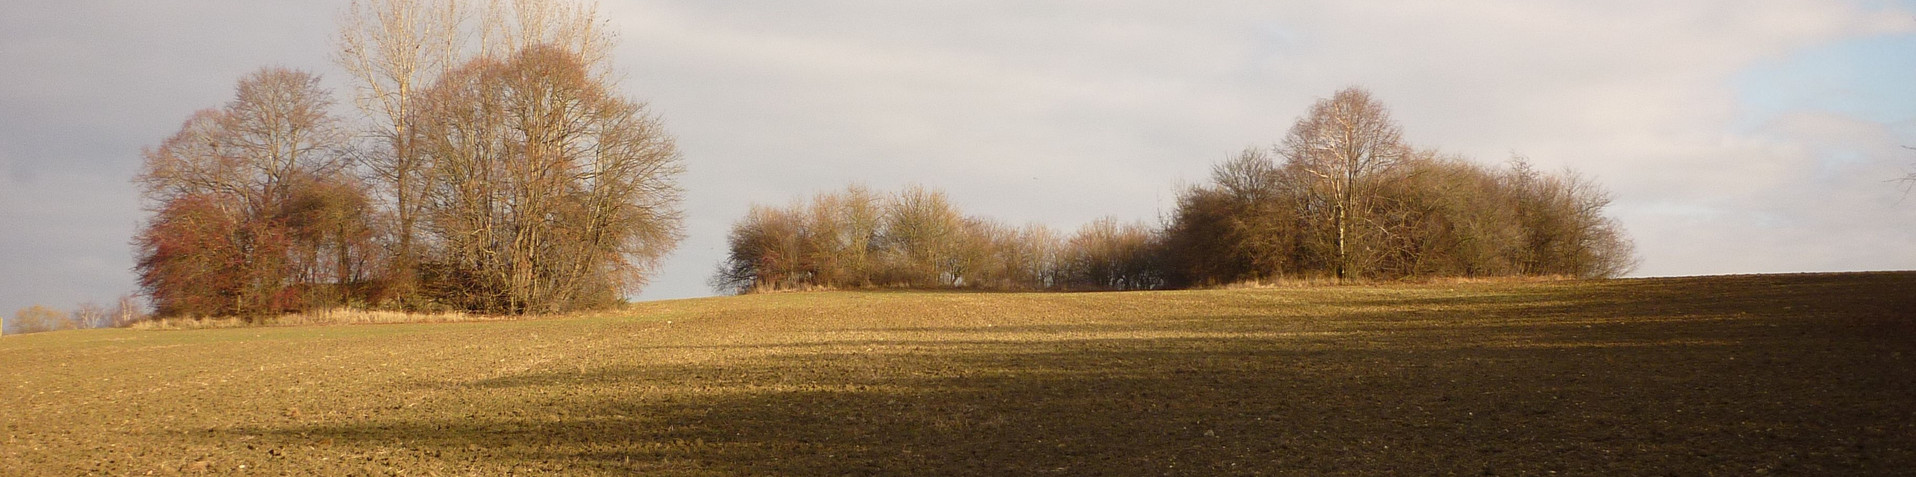 Herbstlicher Acker mit Gehölinseln im Hintergrund. Die Gehölzinseln markieren die Position ehemaliger Bunker.